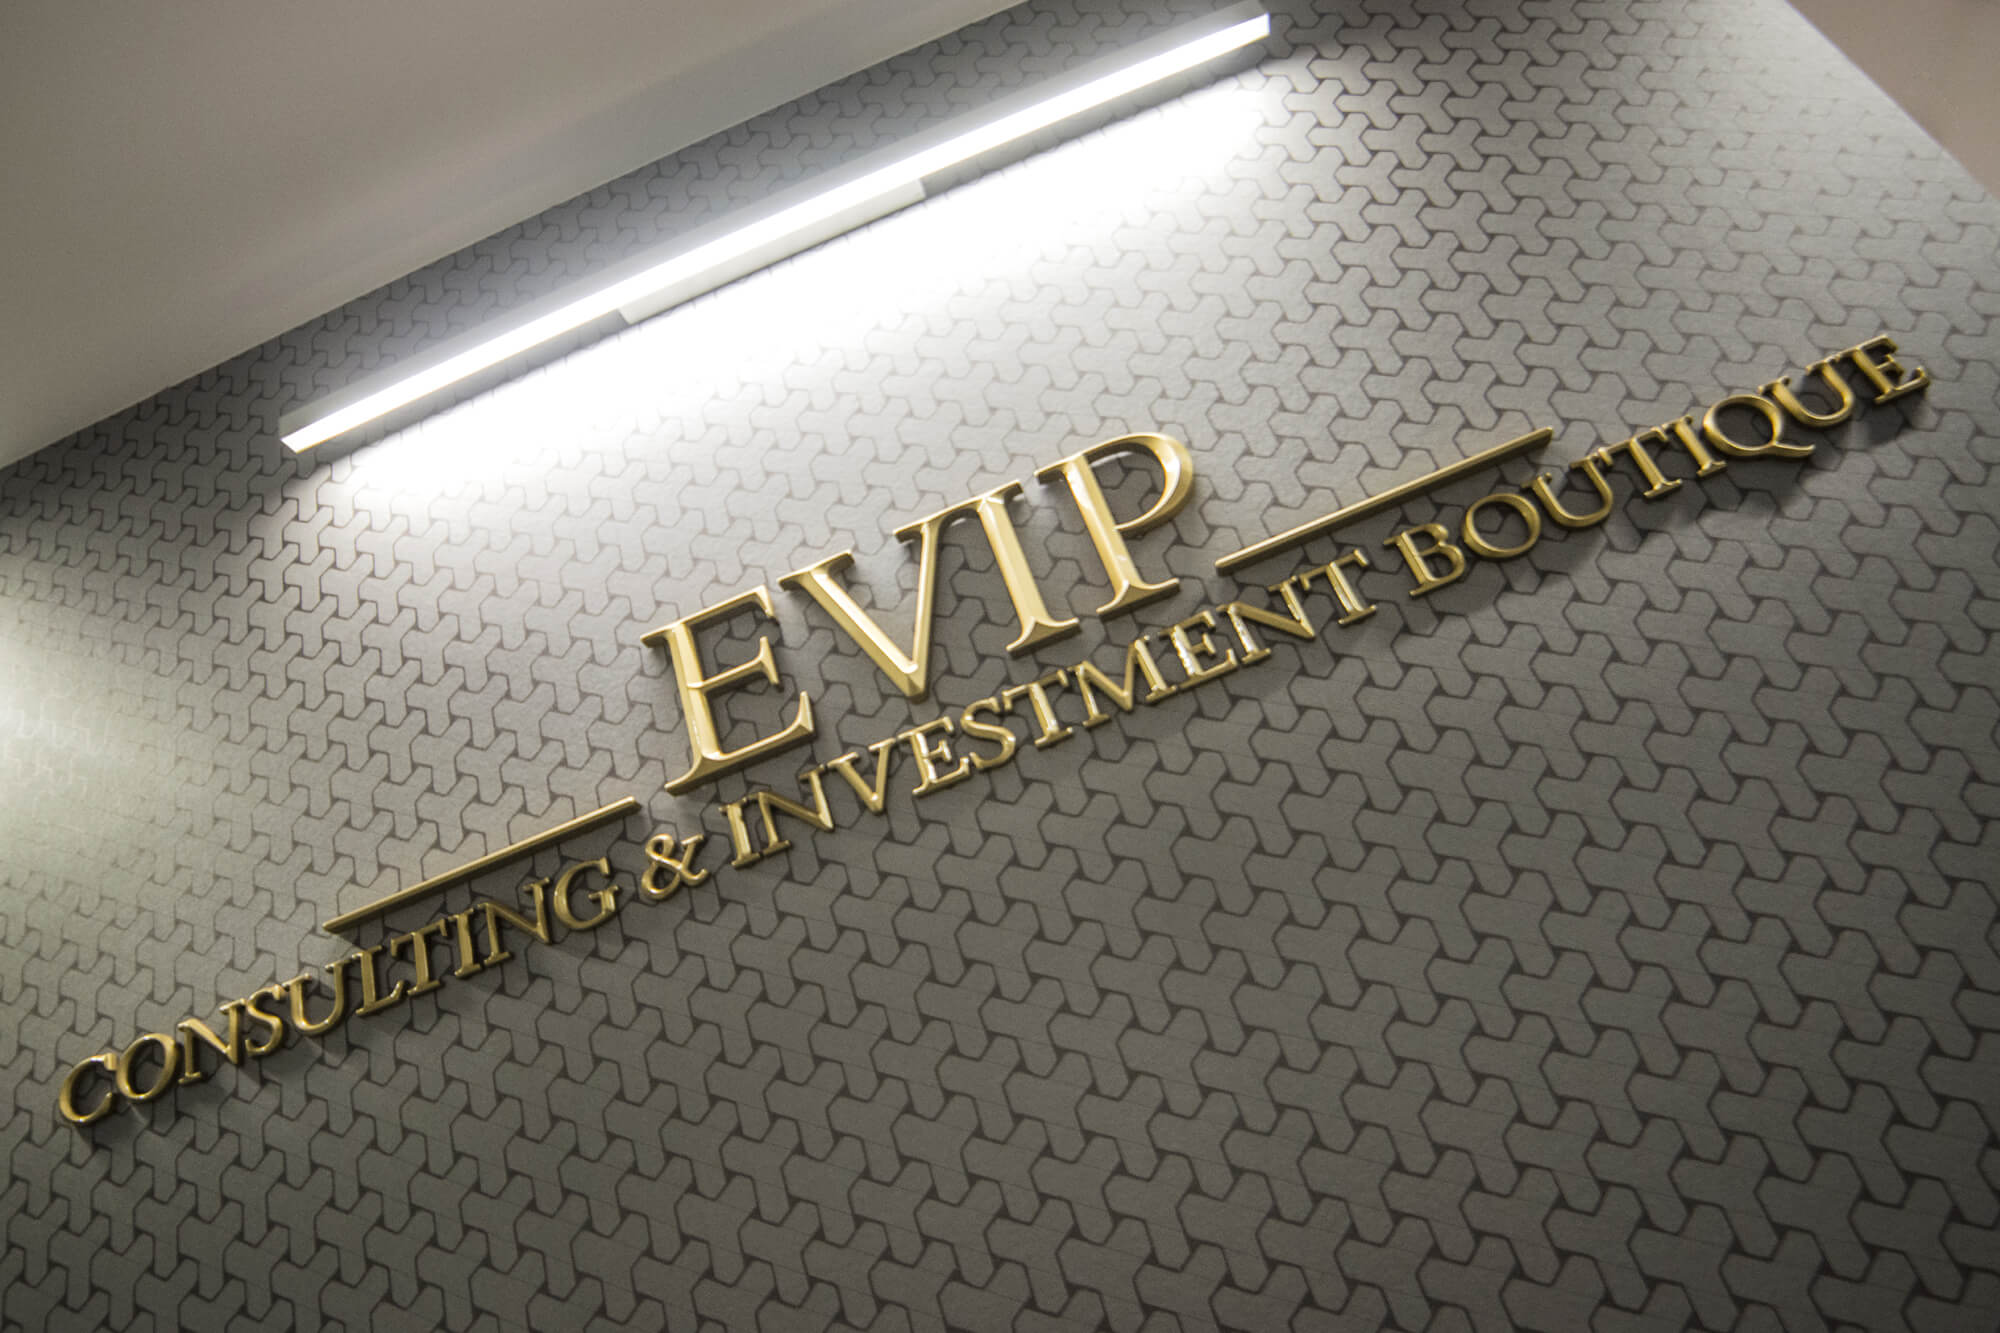 Evip- lettresprismatique - Evip - Lettres prismatiques en 3D placées dans le hall d'entrée